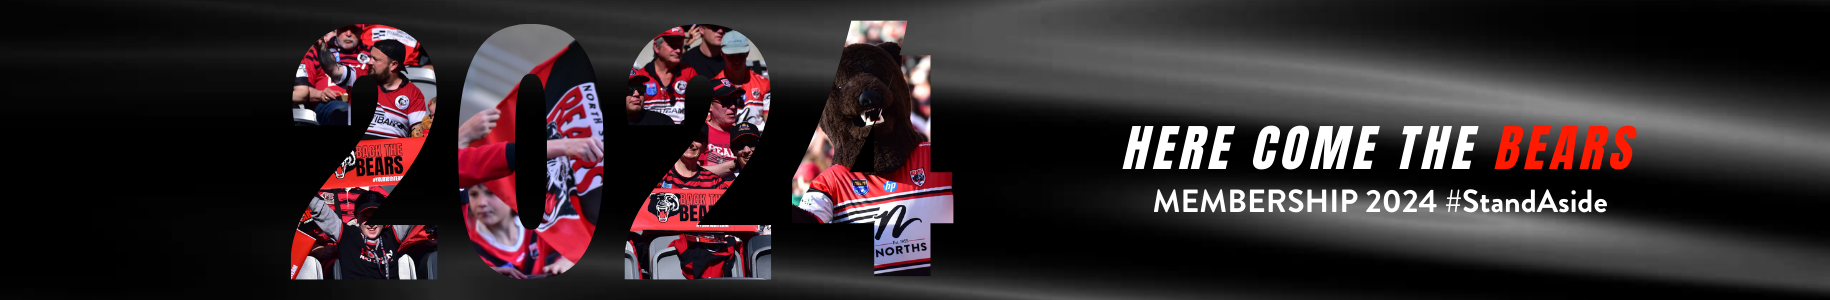 Membership 2023 - Back the Bears